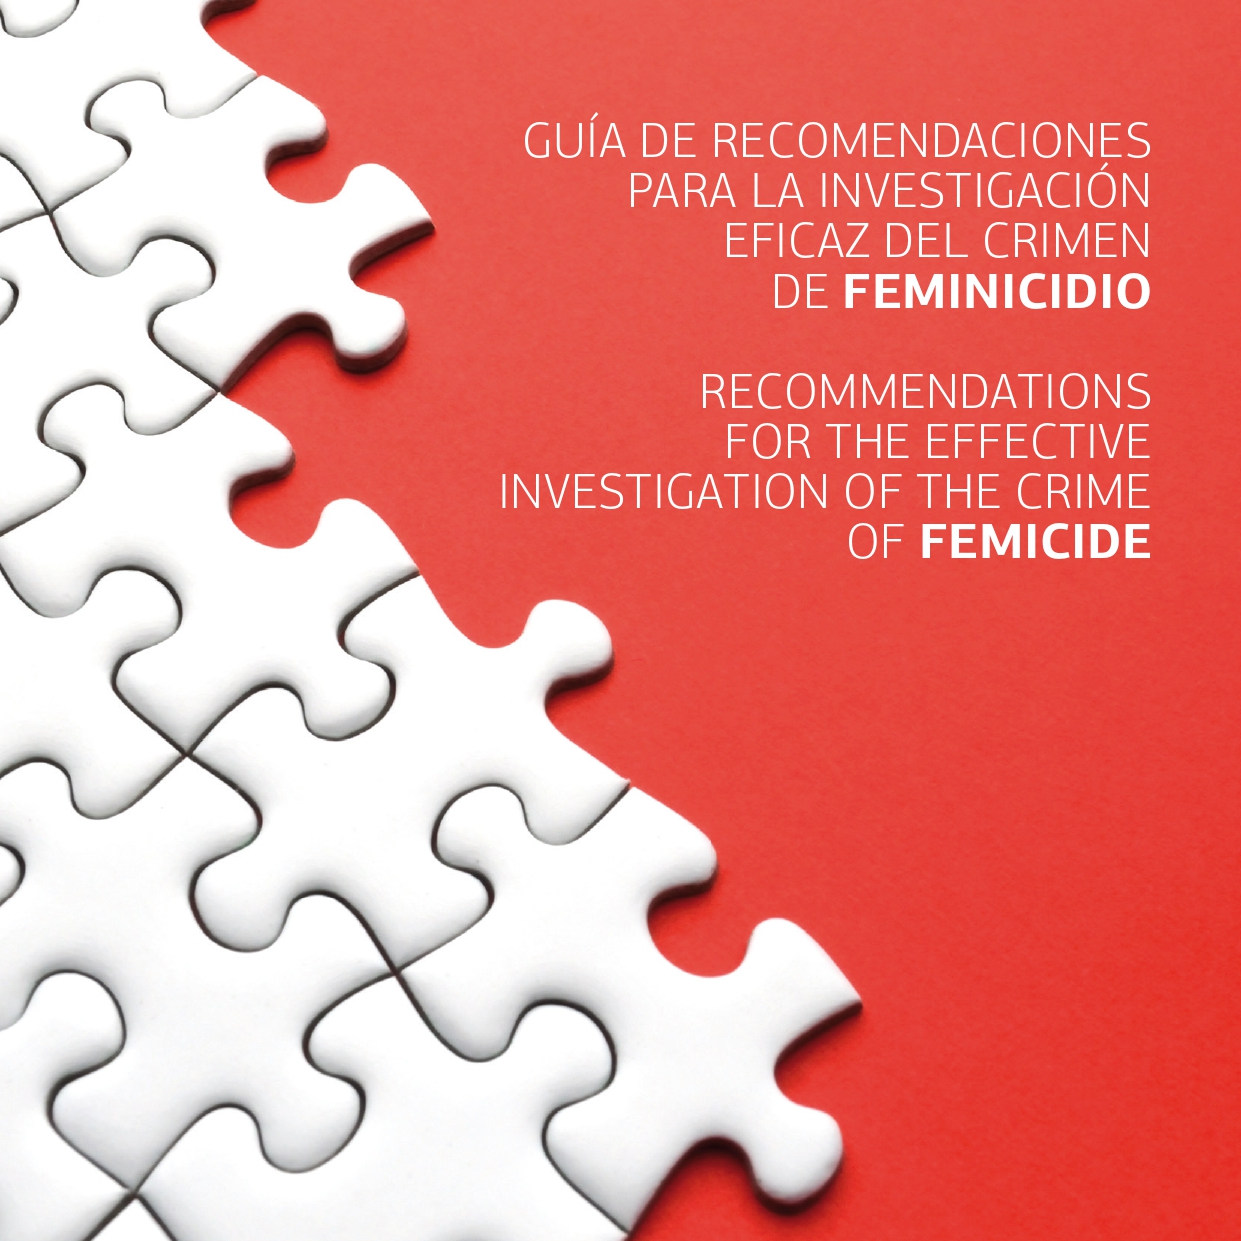 Guía de recomendaciones para la investigación eficaz del crimen de feminicidio